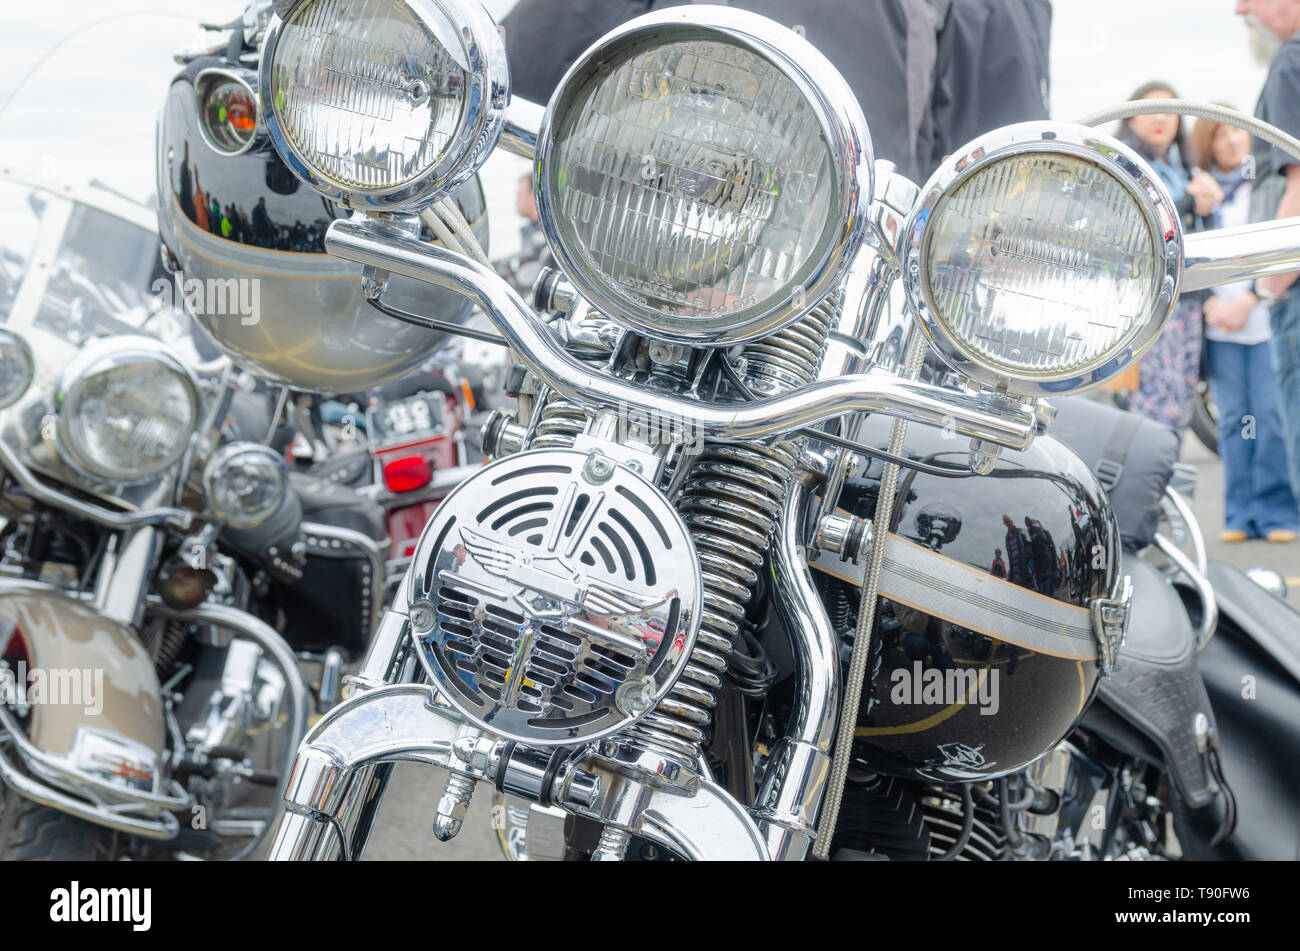 Rédaction d'illustration : un ensemble de barres de poignée chrome poli, de la lumière et de ressorts de suspension enroulée sur une moto Harley Davidson garée. Banque D'Images